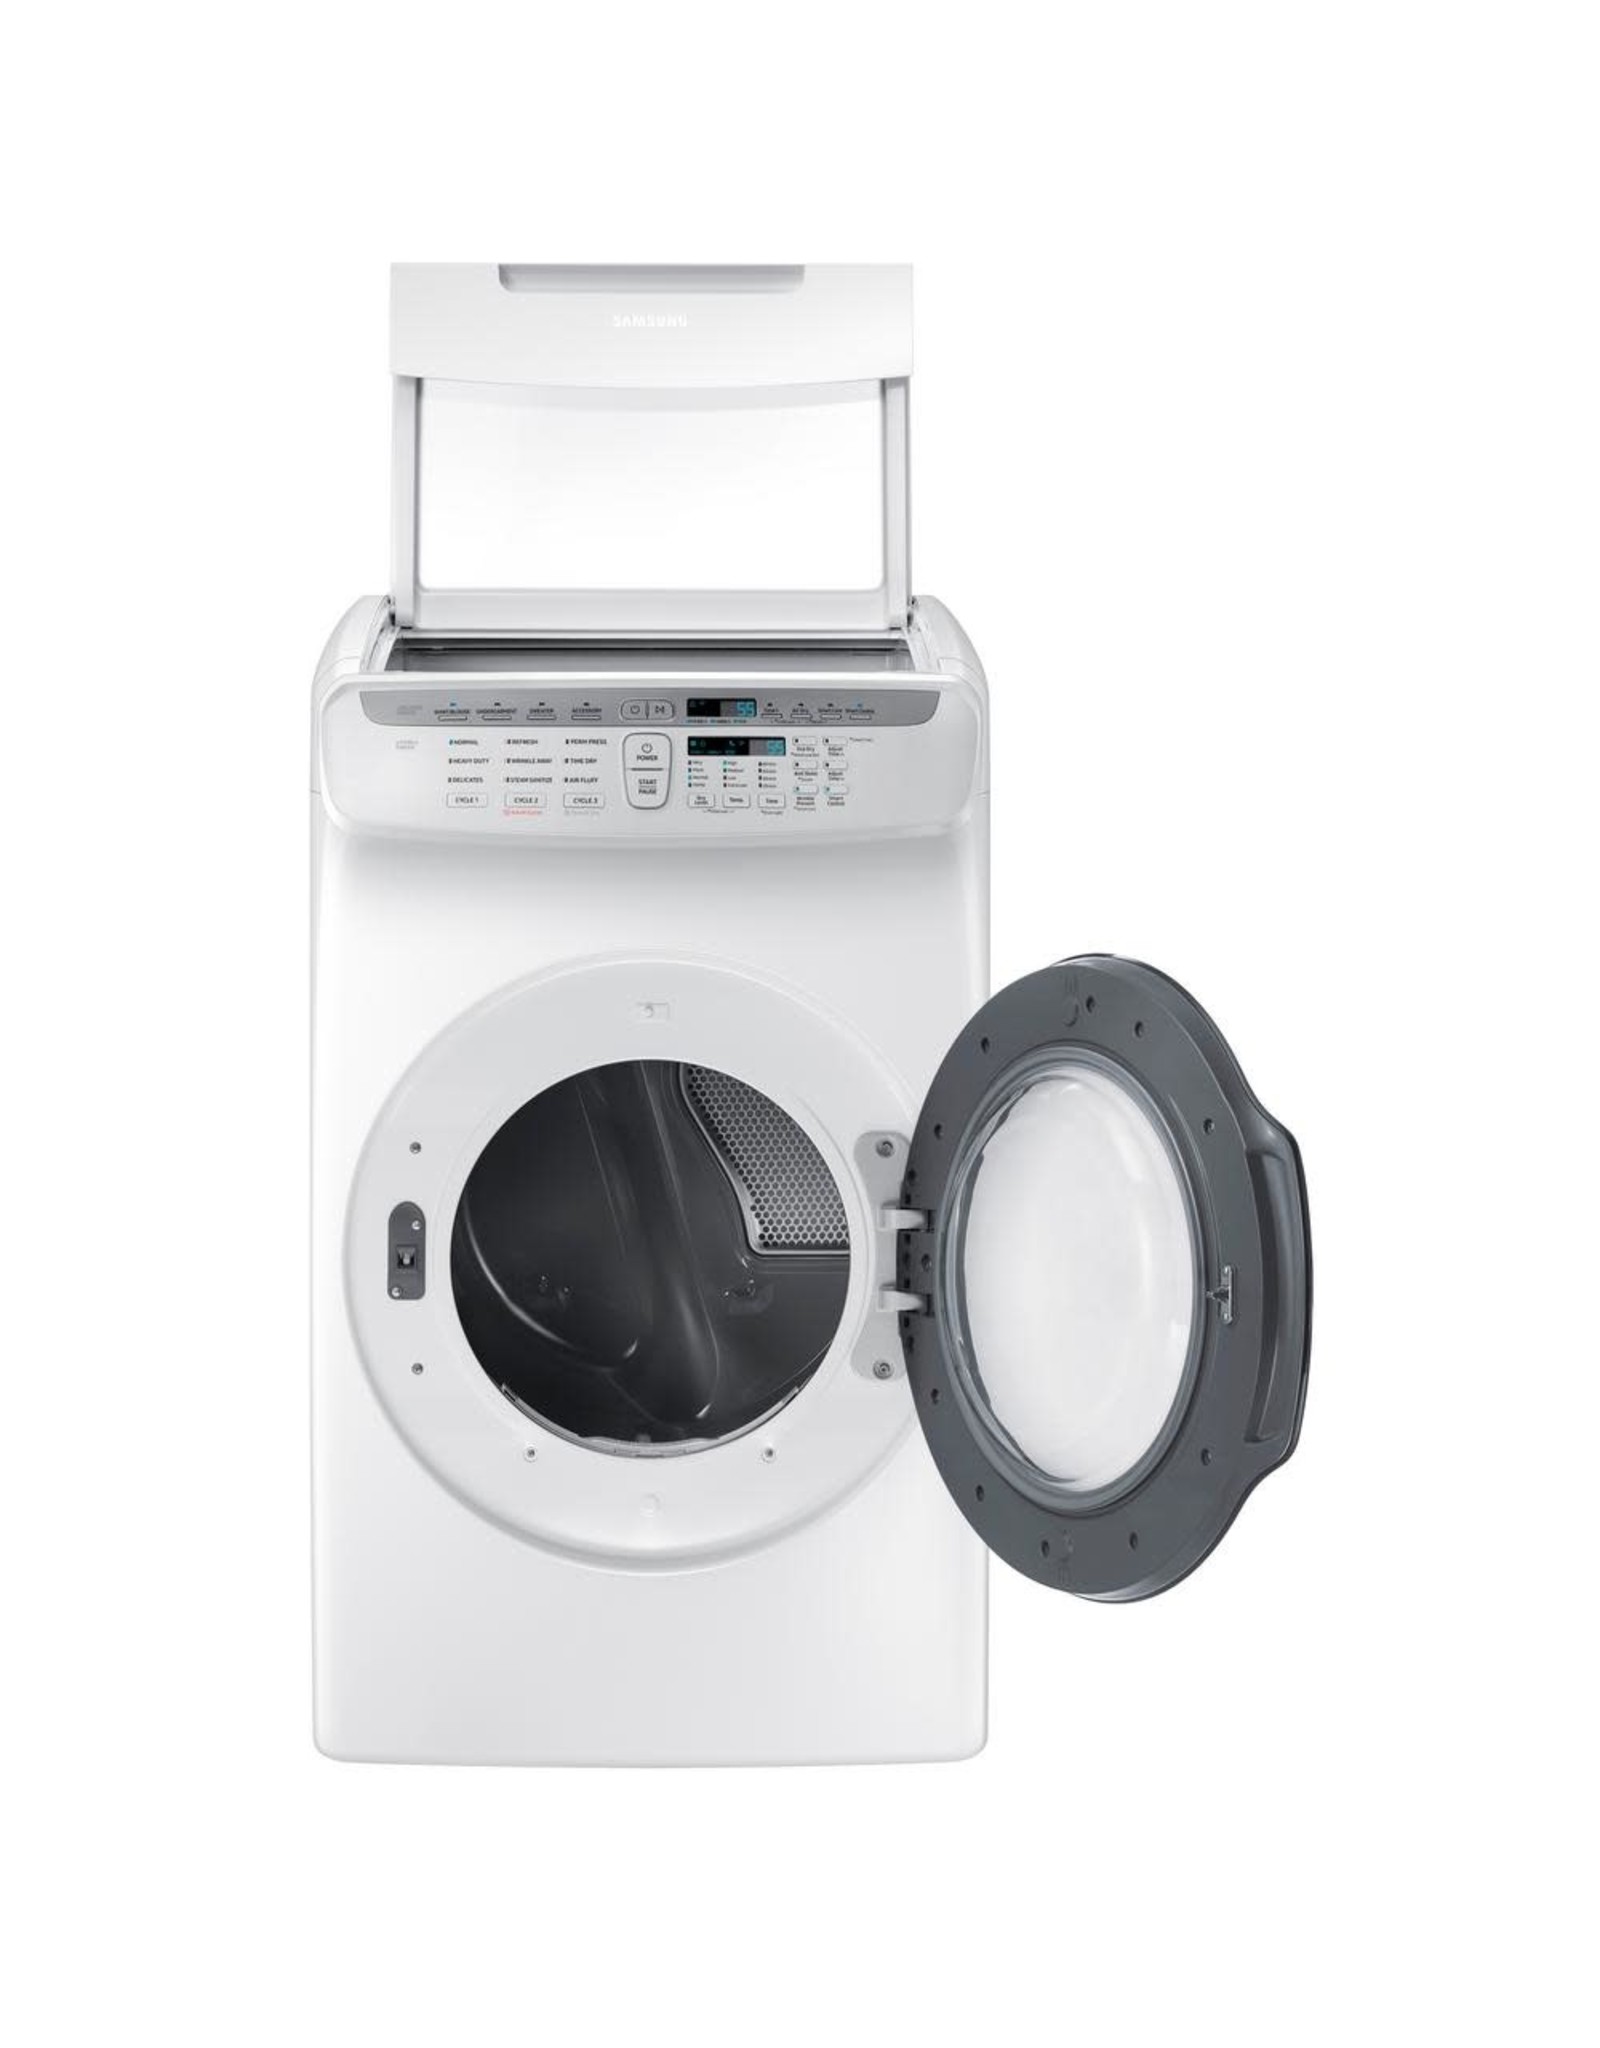 SAMSUNG DVE55M9600W Samsung 7.5 cf electric dryer w/ Multi-Steam (White)